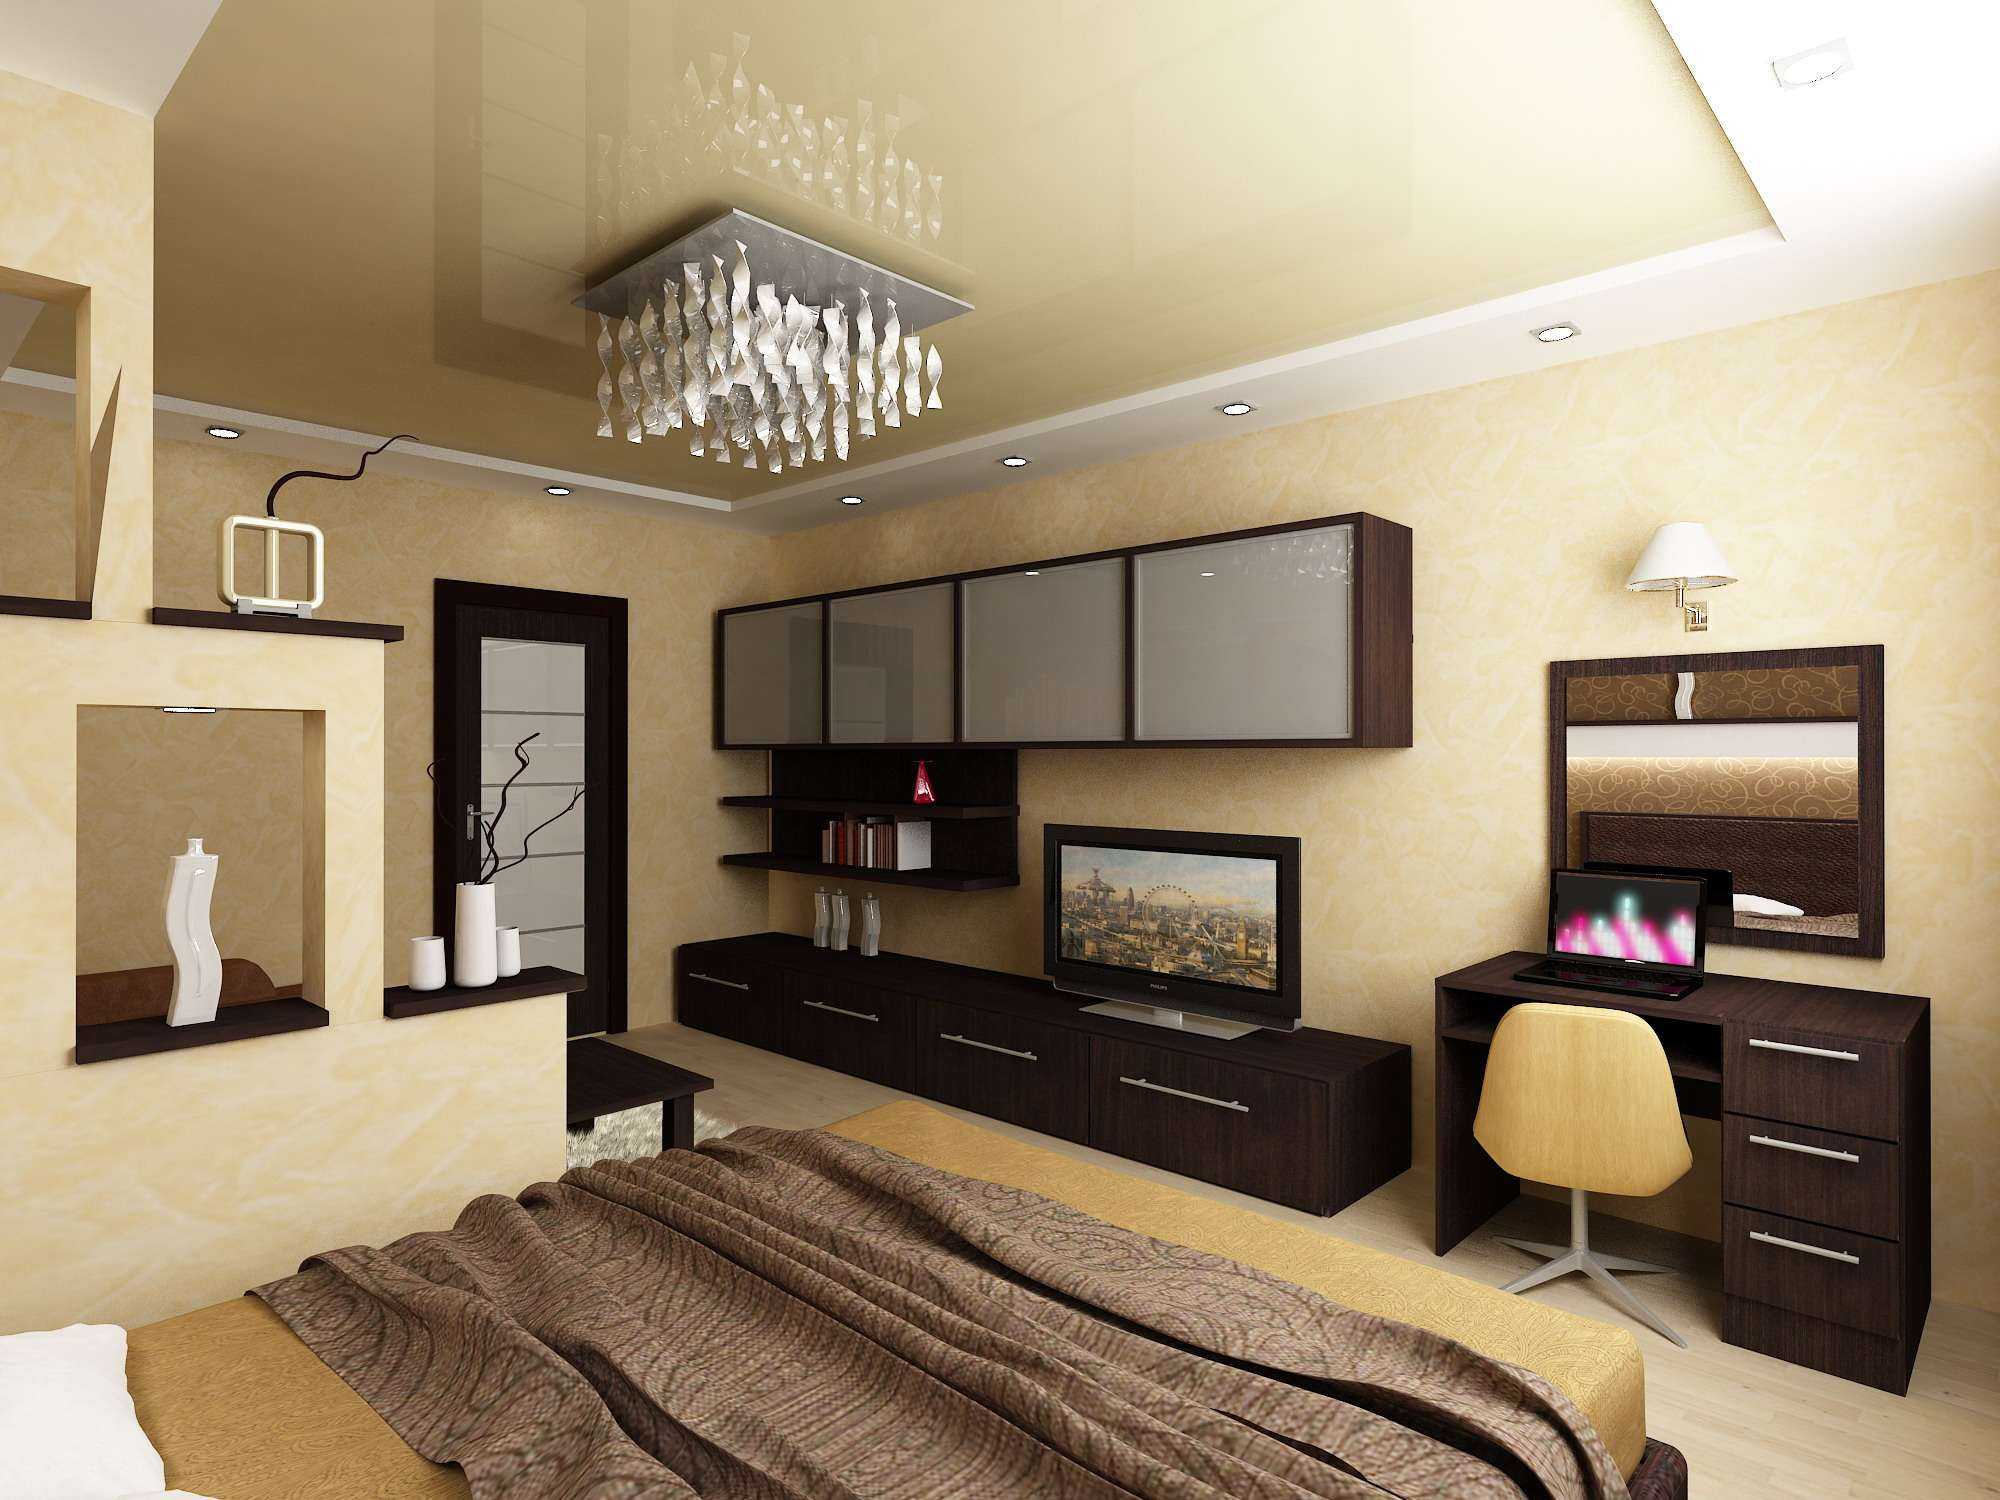 Как обустроить дизайн спальни 17 кв. м - идеи интерьера, советы, фото